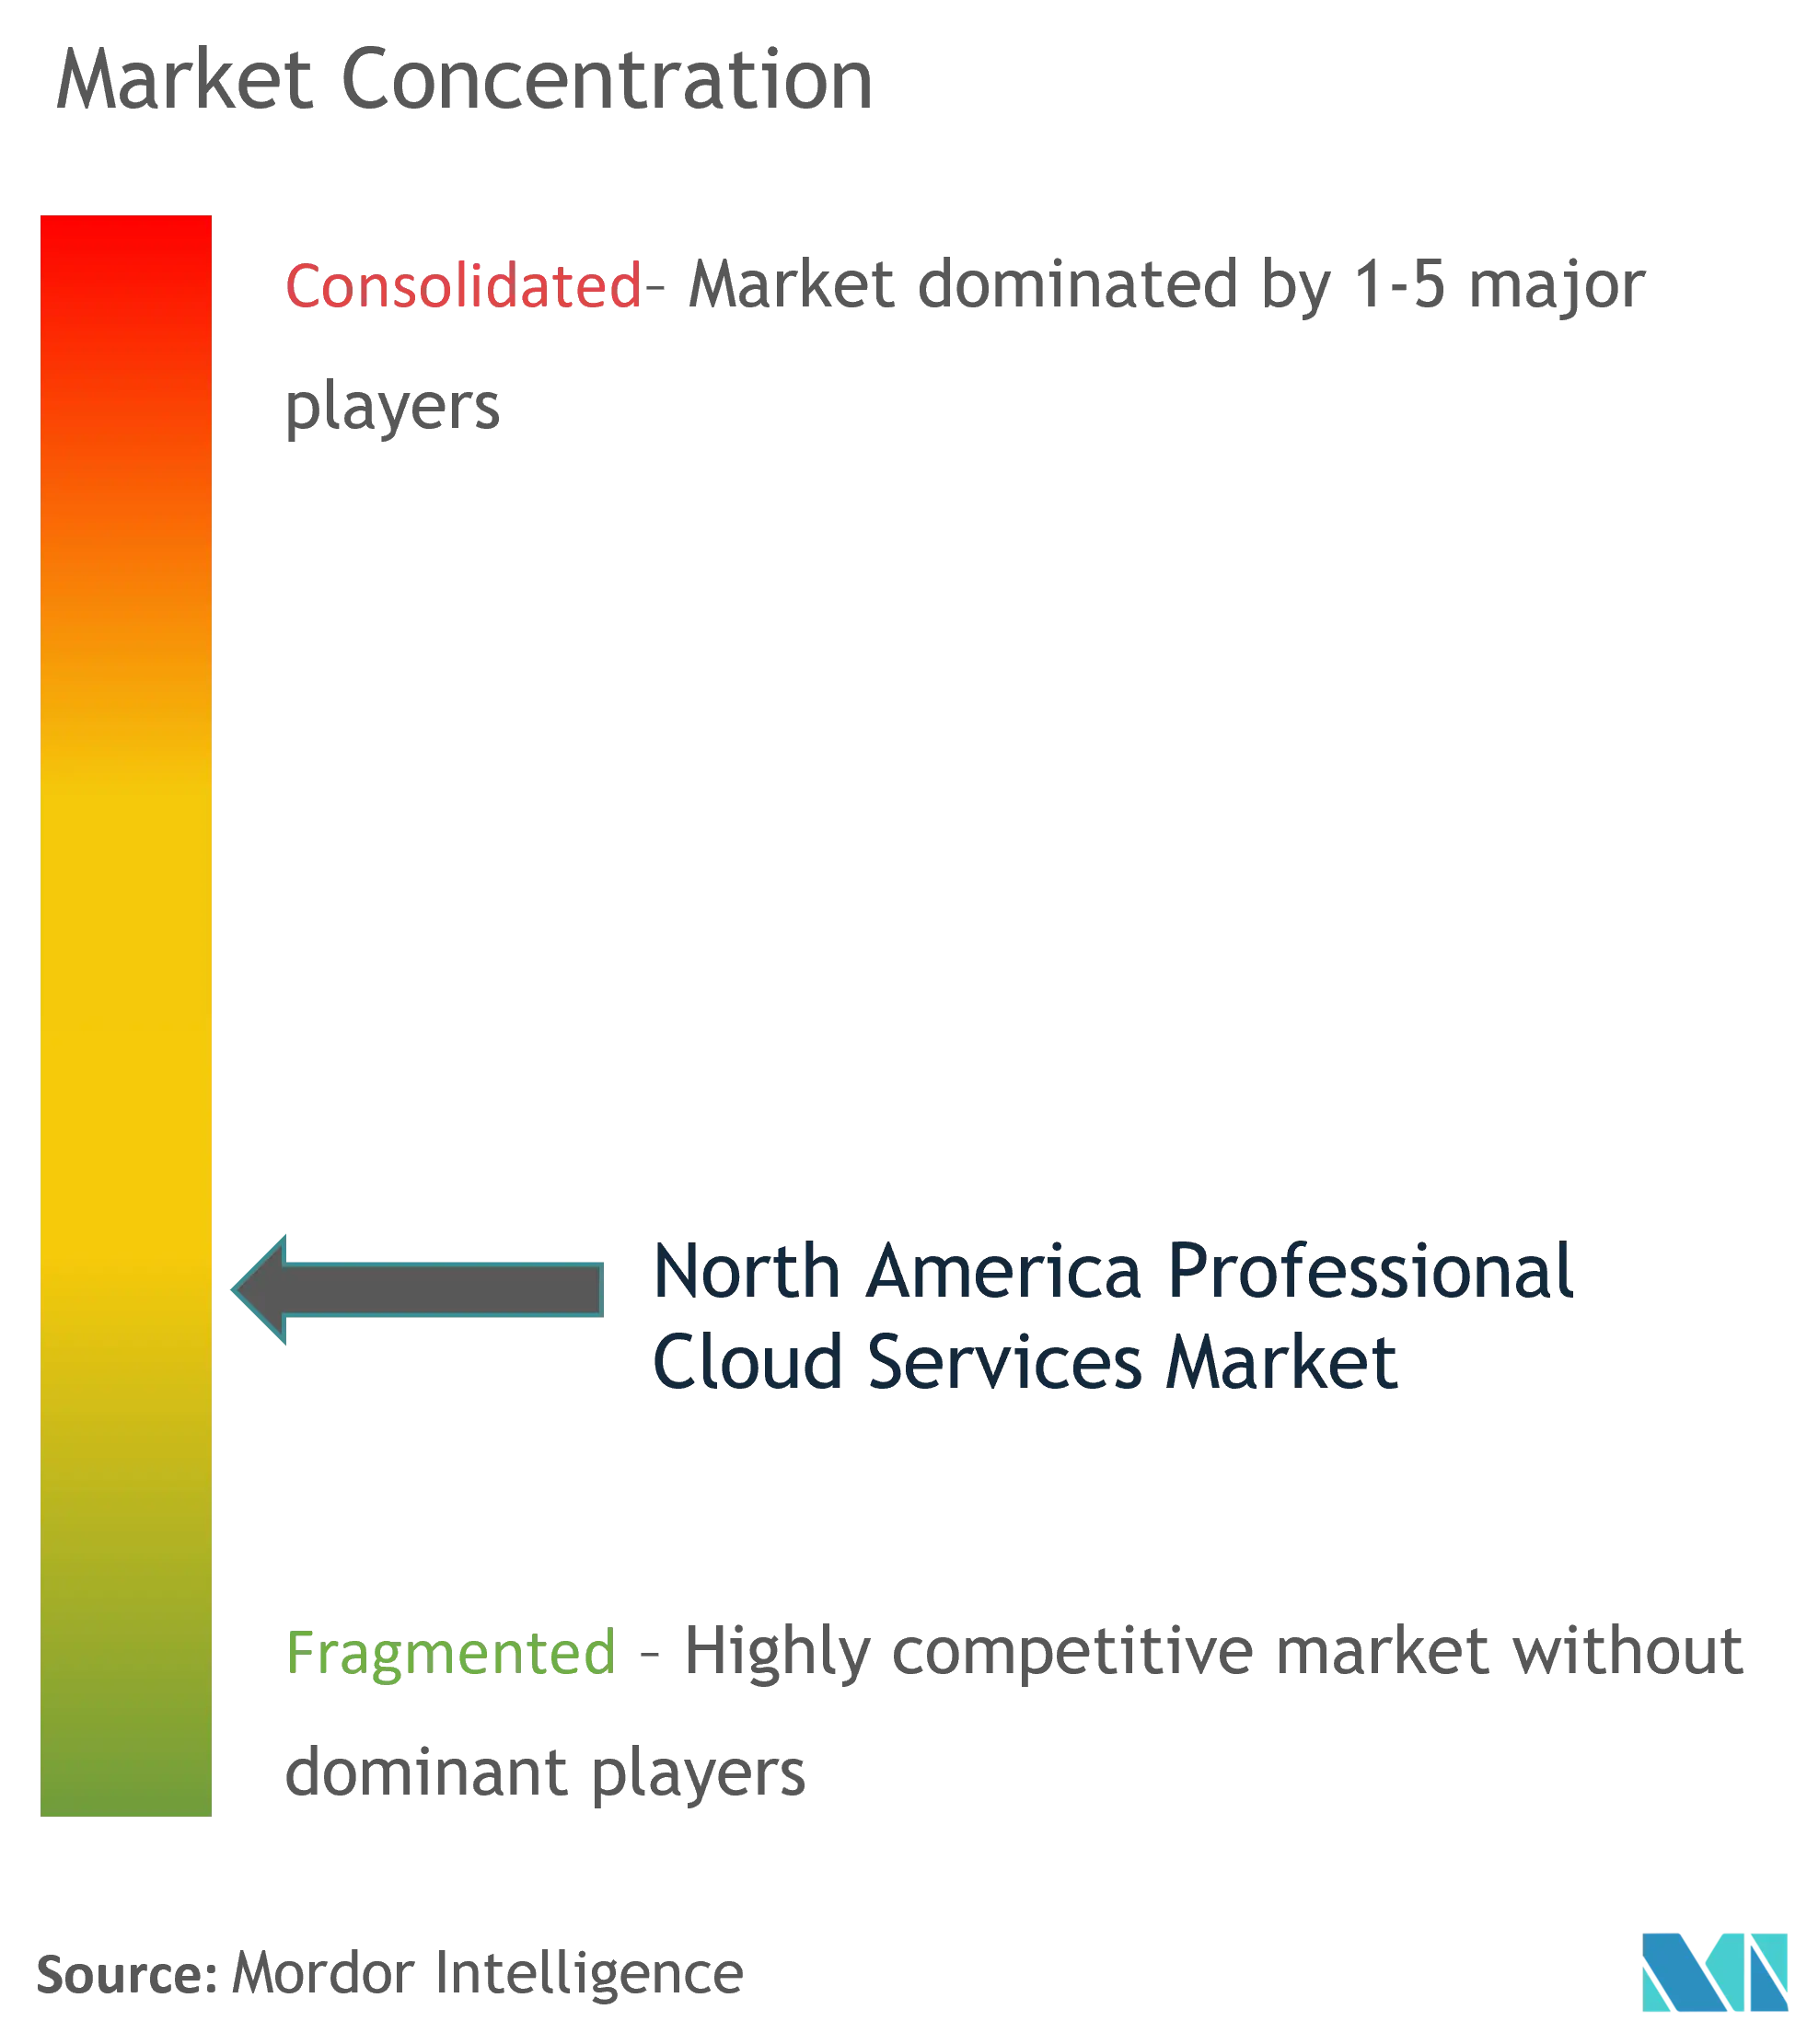 Nordamerika-Markt für professionelle Cloud-Dienste – Marktkonzentration